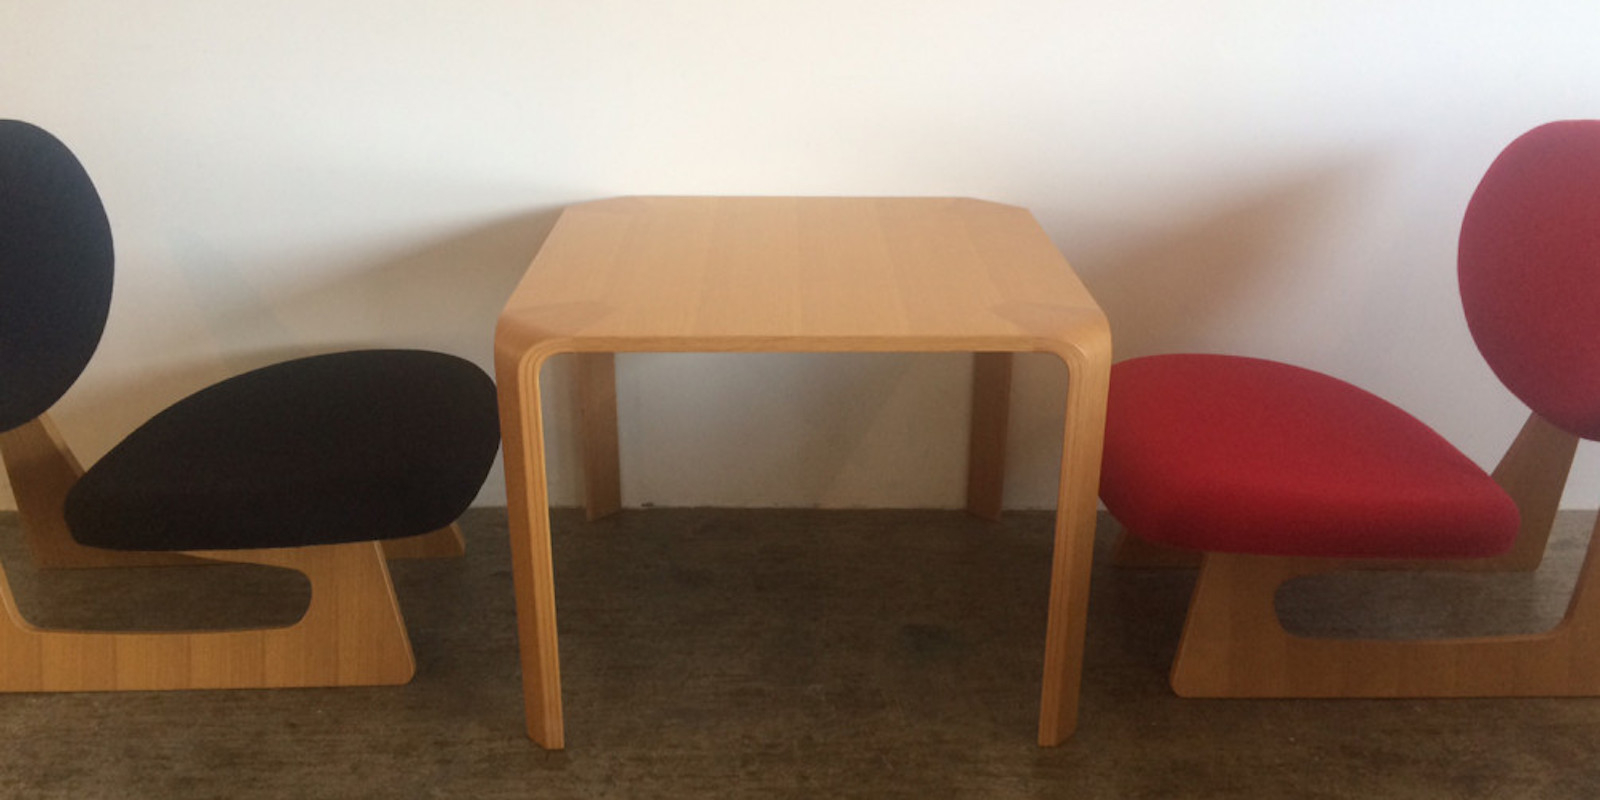 座卓からうまれたテーブルと低座椅子